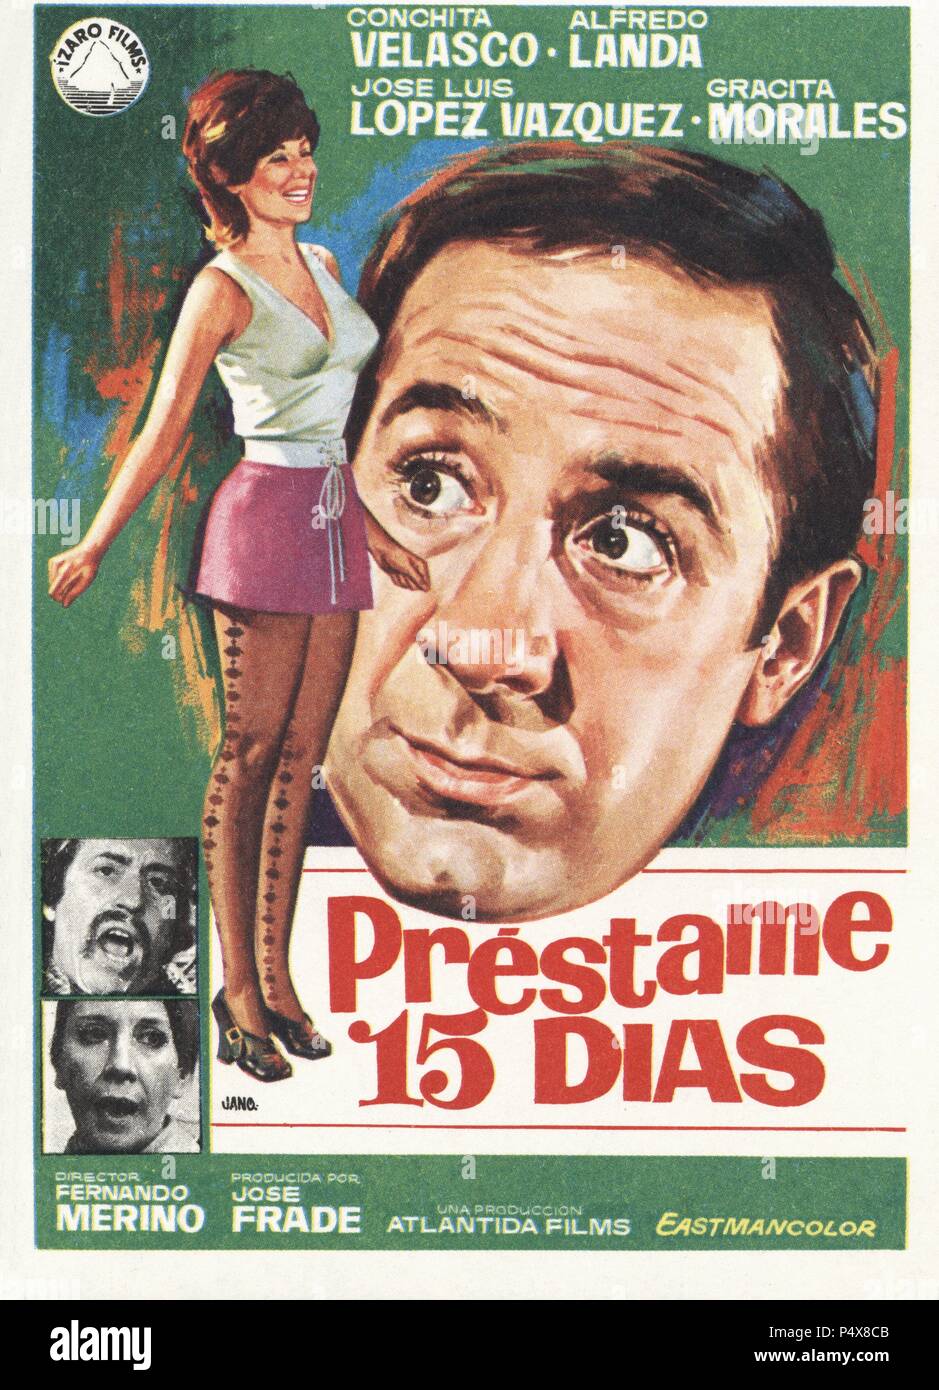 Cartel de la película Préstame 15 Días, ilustrado por Jano, con Conchita Velasco, Alfredo Landa y José Luis López Vázquez, dirigida por Fernando Merino. España, 1971. Stock Photo